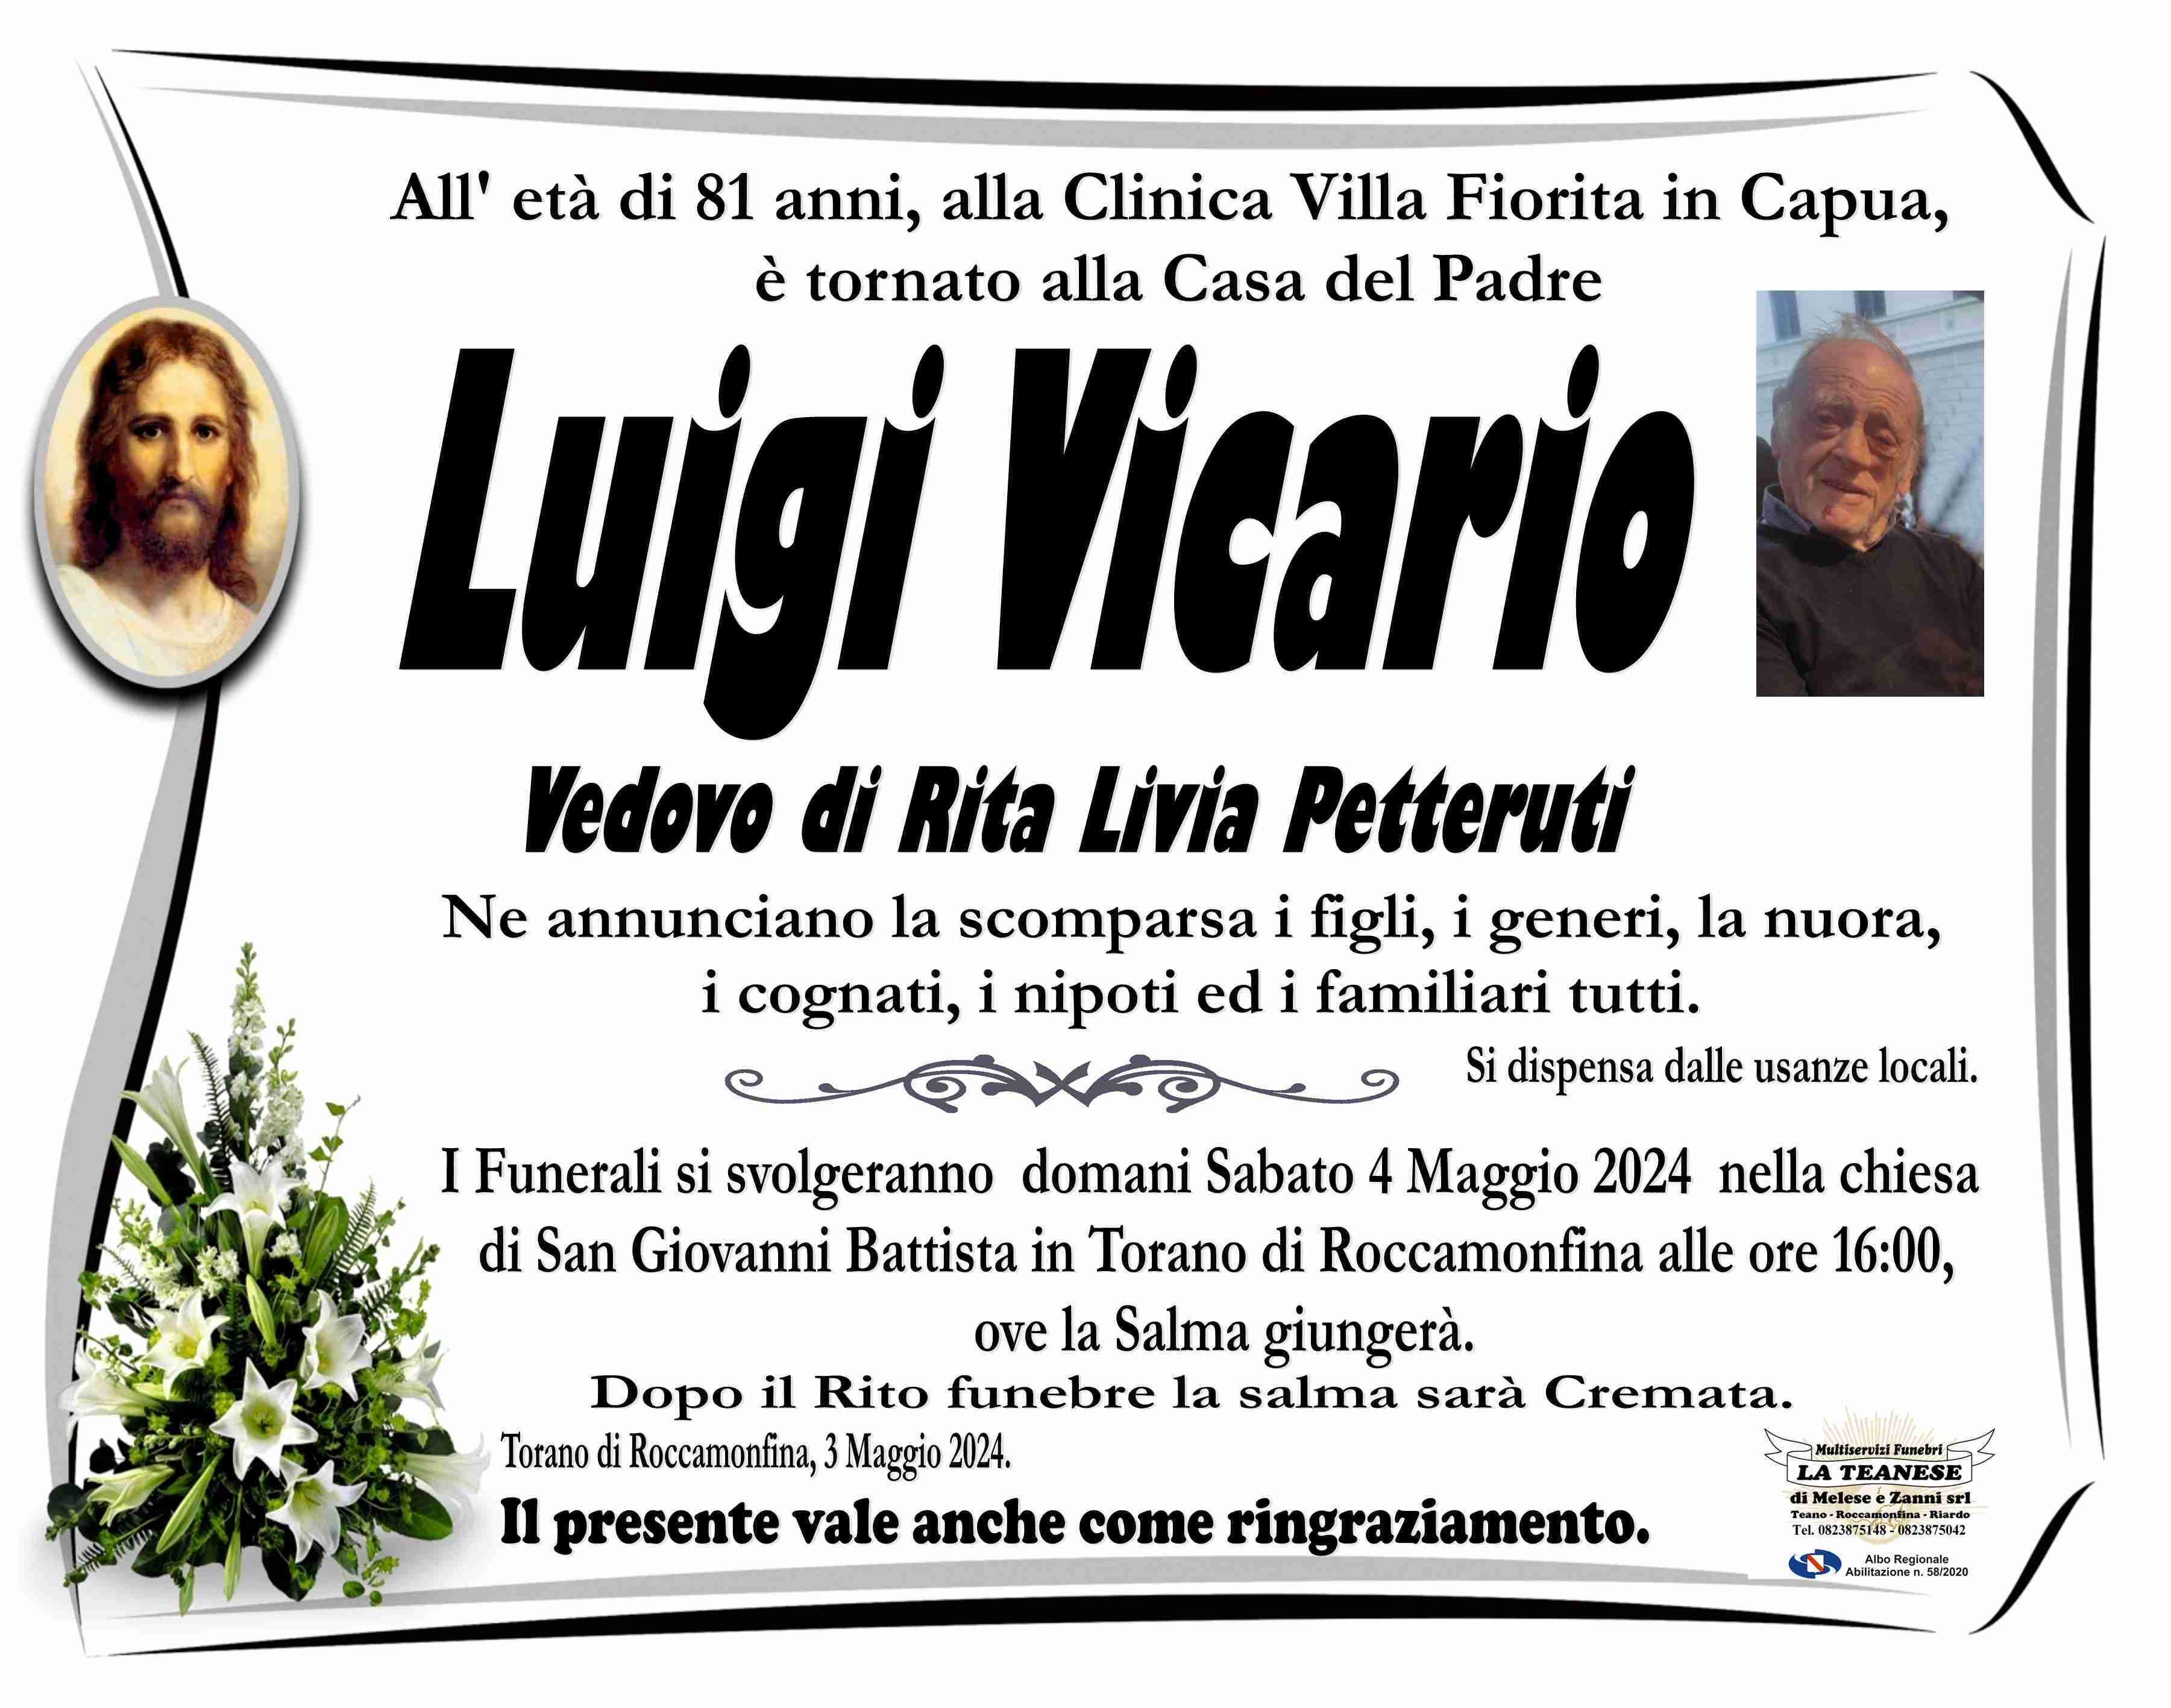 Luigi Vicario